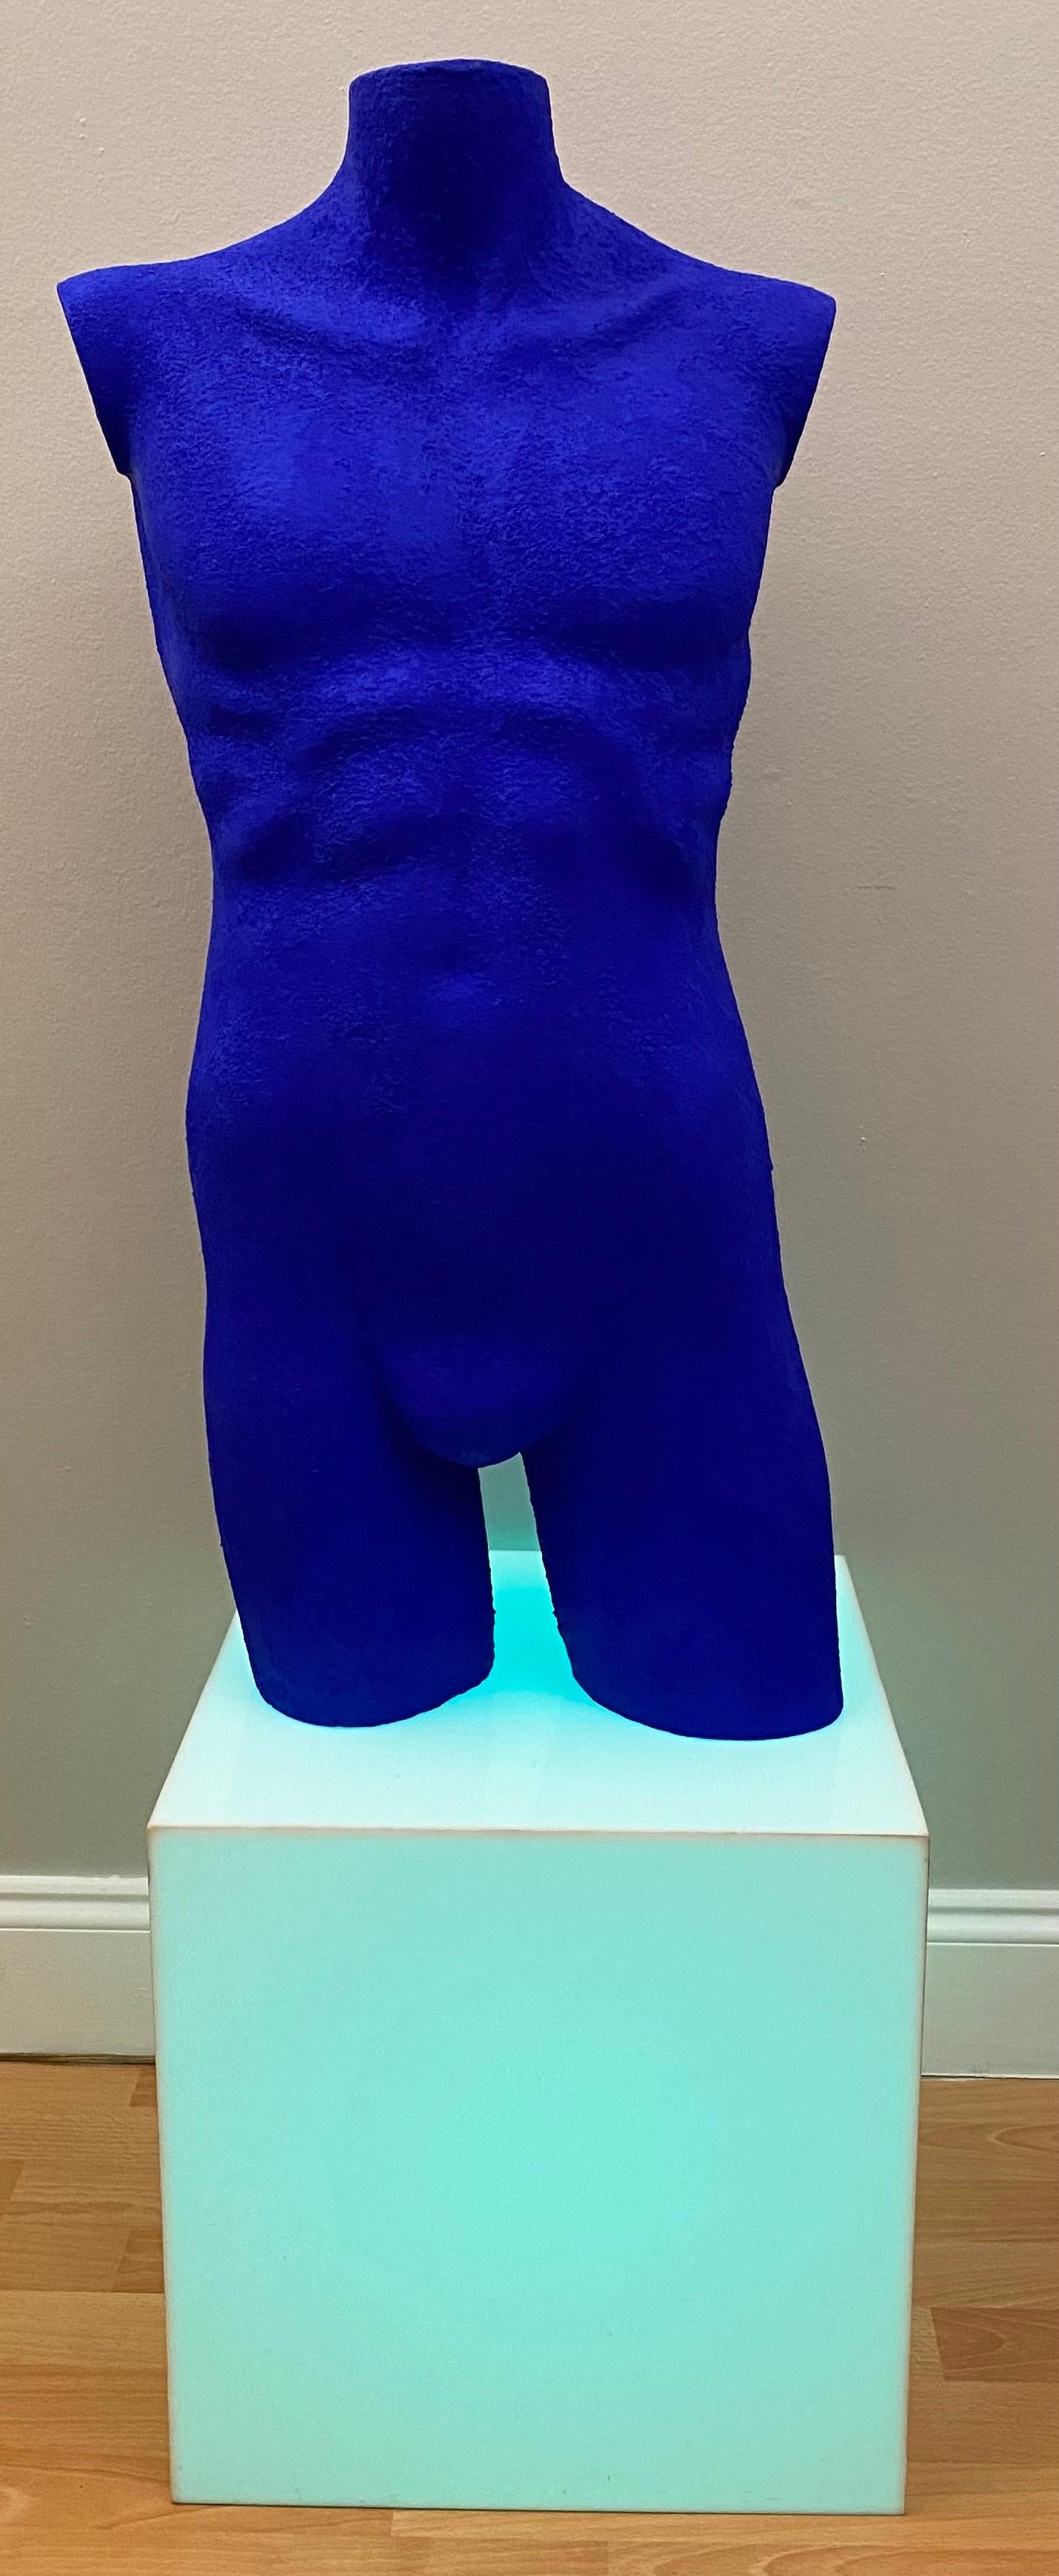 Sculpture moderne d'homme nu réalisée en Lucite massif et finie à la manière des œuvres d'art bleues d'Yves Klein. Cette nuance particulière de bleu, appelée IKB (International Klein Blue), a été développée et brevetée par Klein lui-même.

Cette